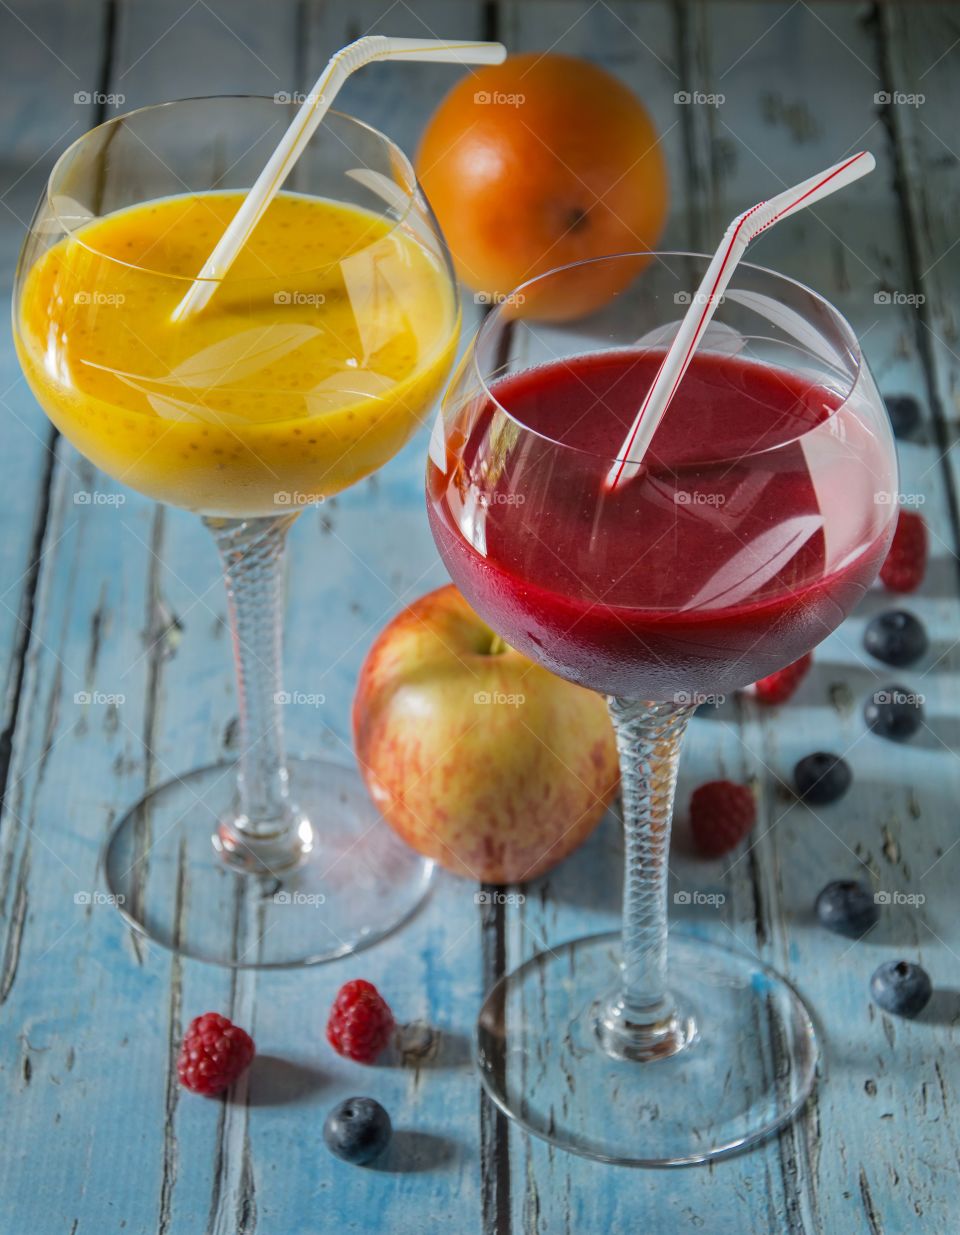 Closeup shot of fruit juices